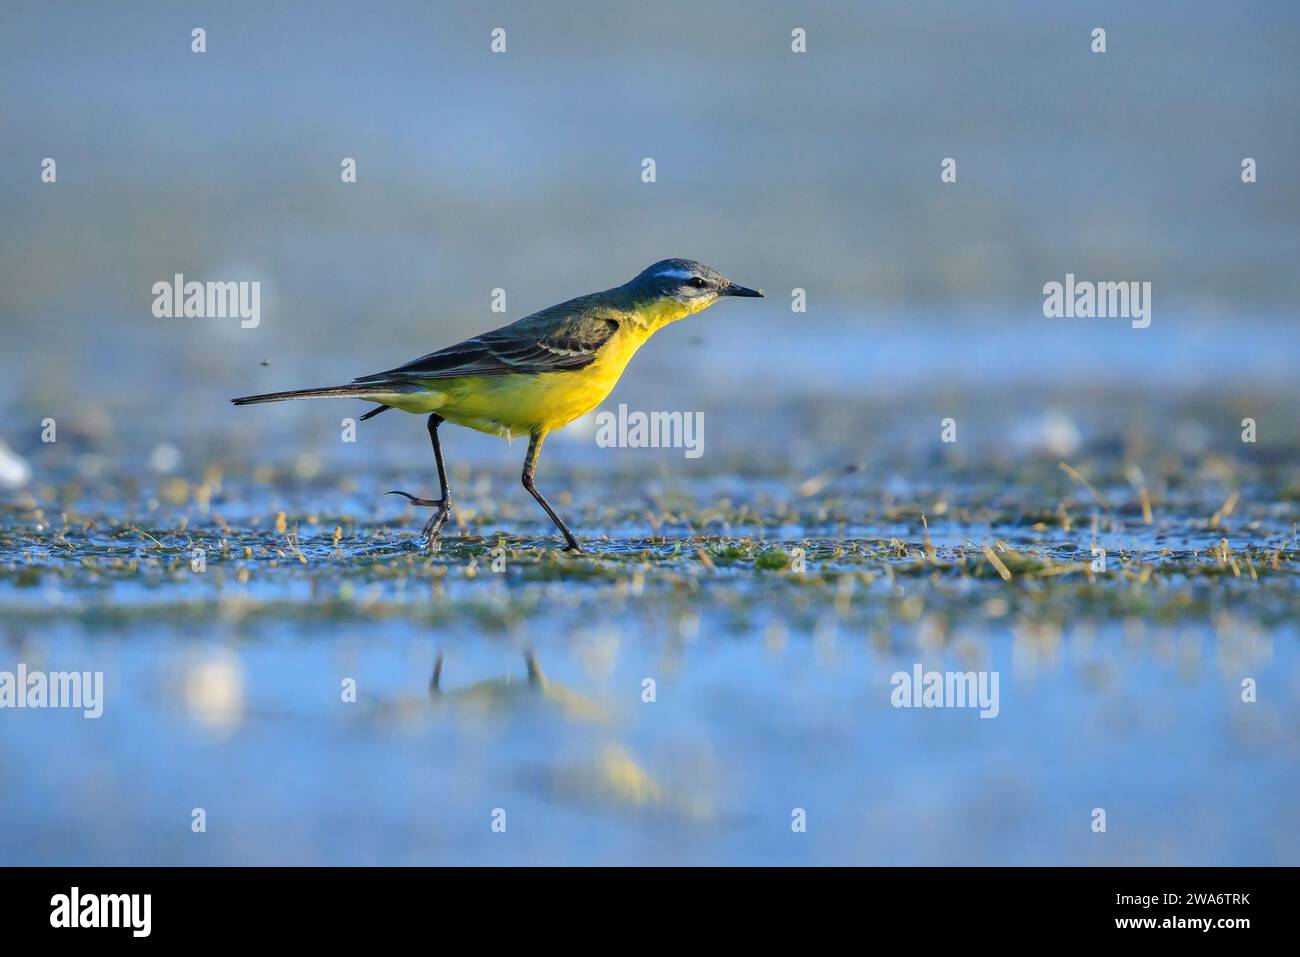 Primo piano di un uccello giallo occidentale maschile, la Motacilla flava, che cerca in acqua in una giornata di sole durante la stagione primaverile. Foto Stock